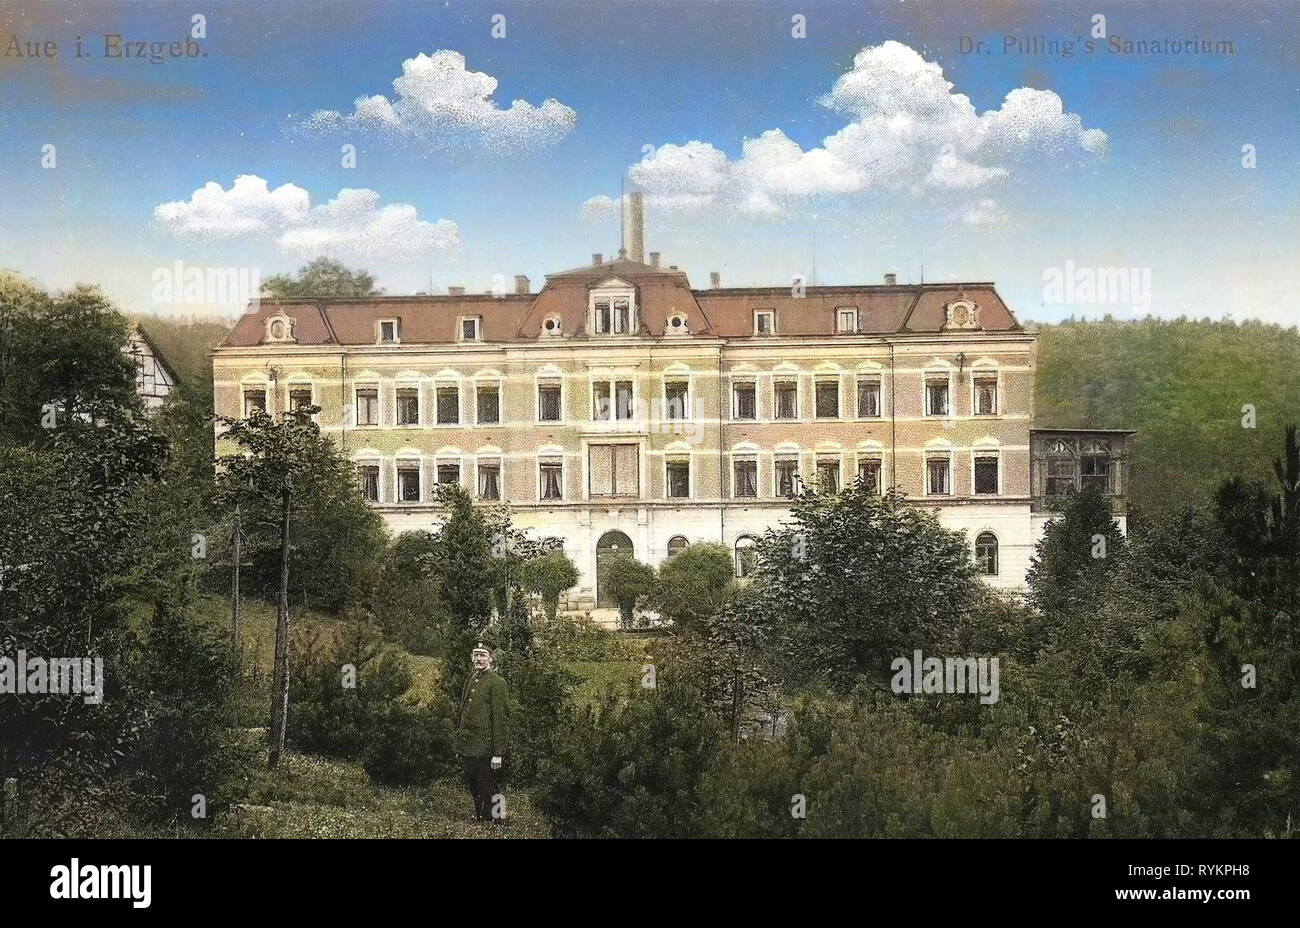 Bâtiments Spa en Saxe, bâtiments en Aue, 1913, Erzgebirgskreis, Aue, le Dr Pillings Sanatorium, Allemagne Banque D'Images